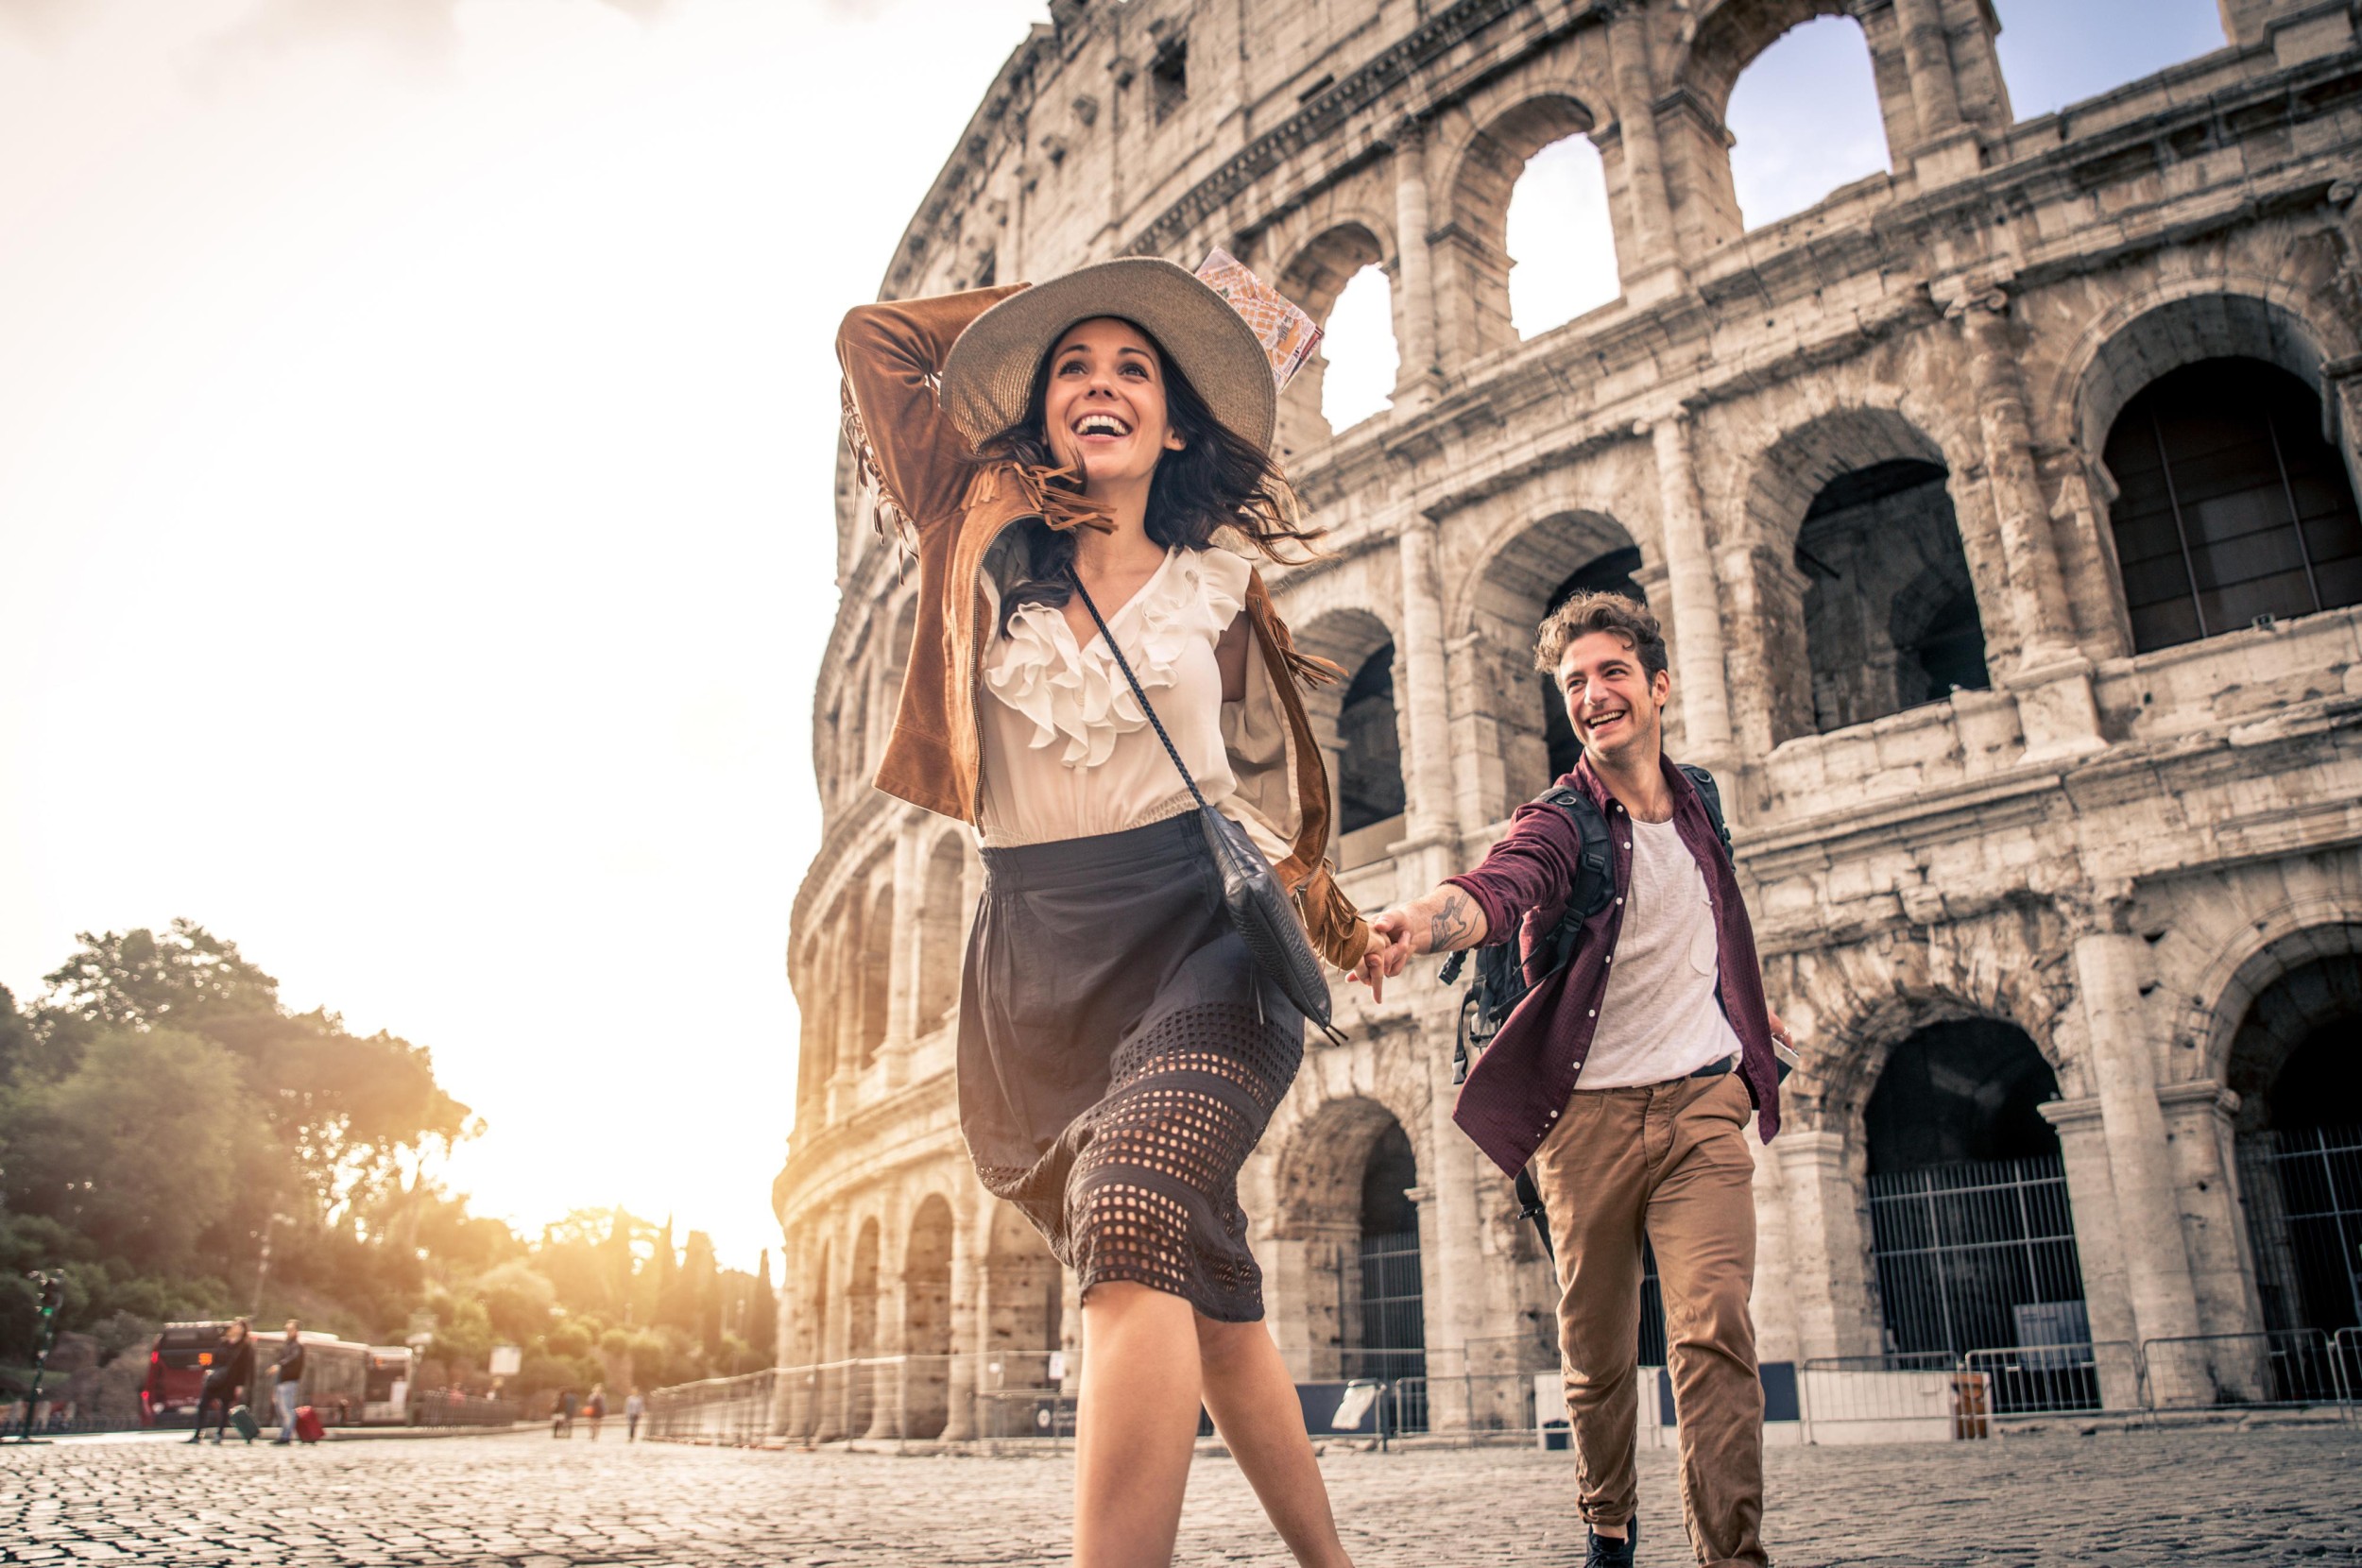 Рим париж. Путешественники в Риме. Пара на фоне Колизея. Путешественники , туристы в Италии. Друзья в Риме.